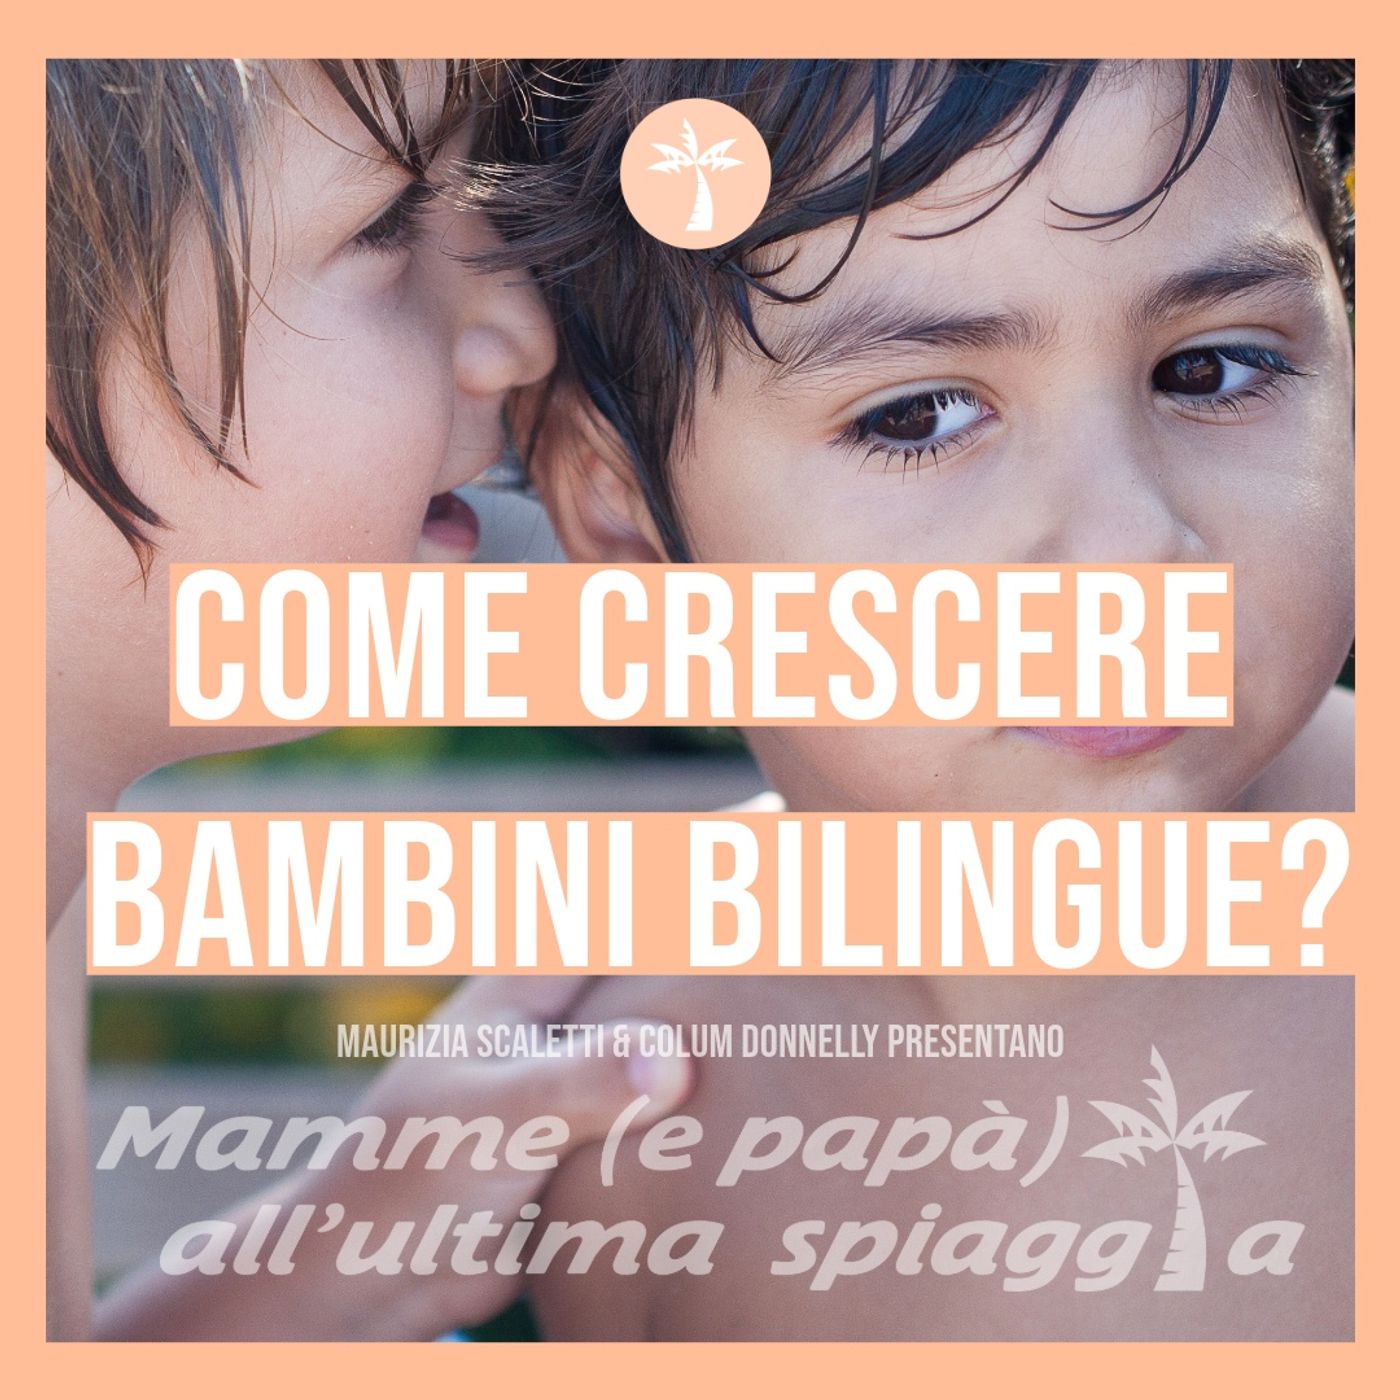 S03 e04 Come crescere bambini bilingue?